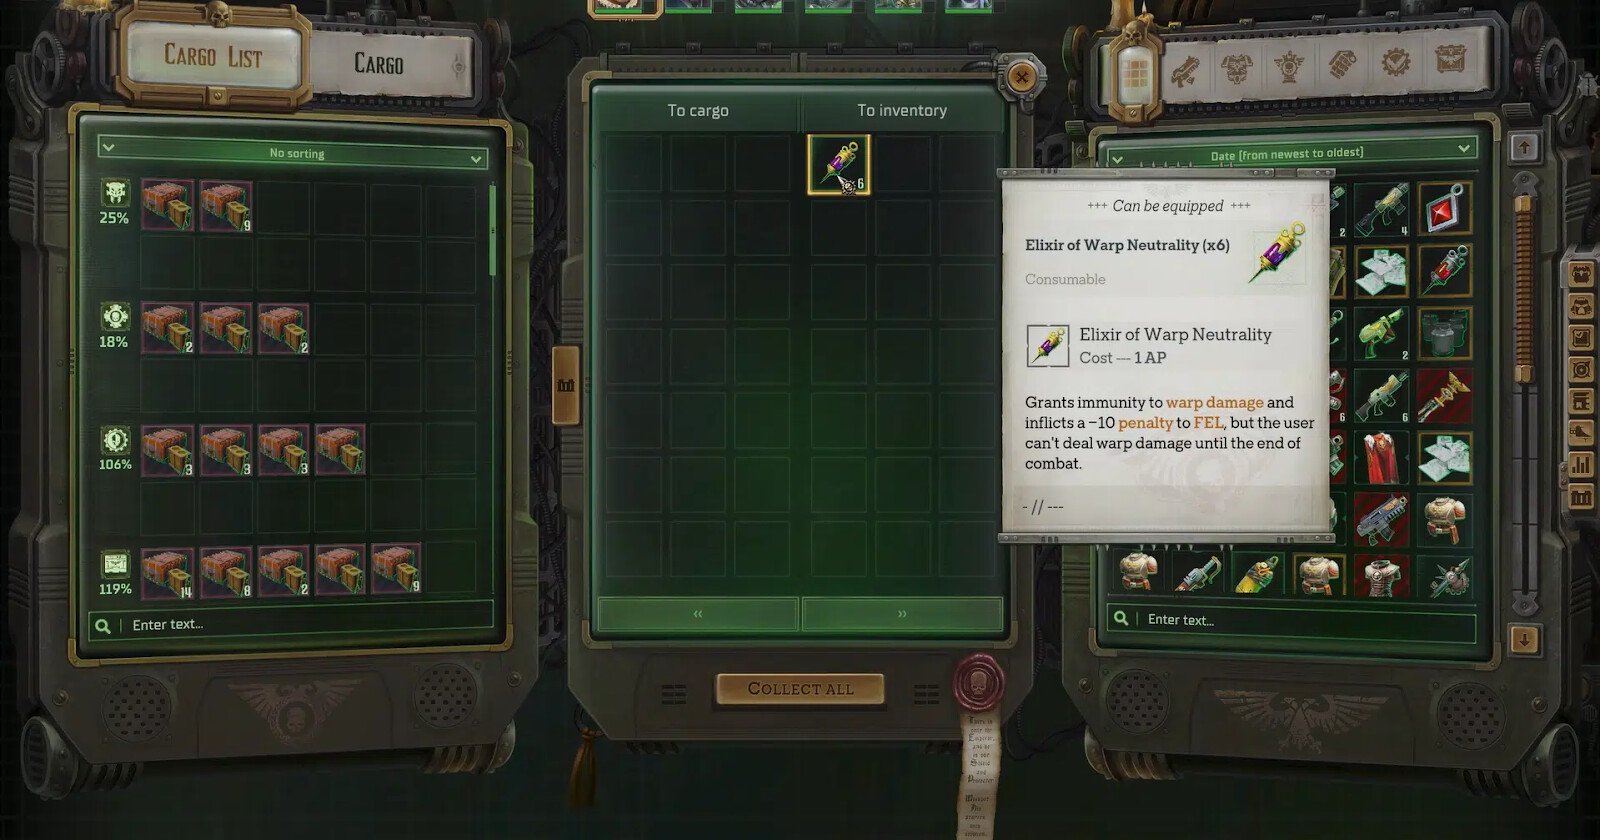 
          Как активировать устройство в лаборатории Навис Нобилите на Эурак-V в Warhammer 40,000: Rogue Trader
        